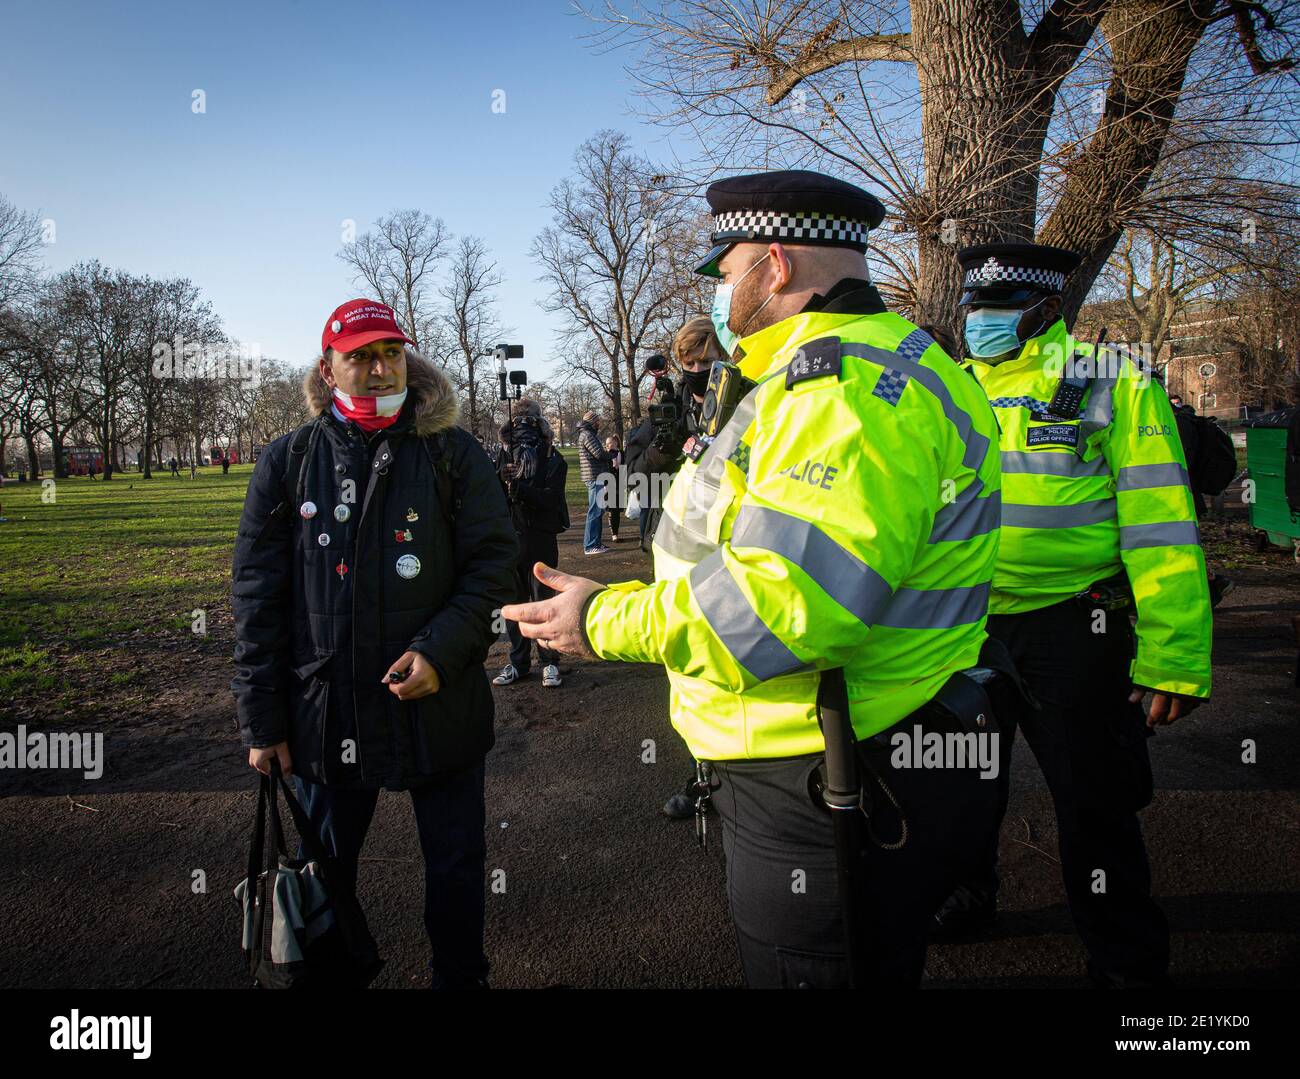 Un manifestante que lleva una gorra de béisbol 'Make Britain Great Again' es interrogado por la policía en el parque Clapham Common durante la manifestación contra el bloqueo. Foto de stock